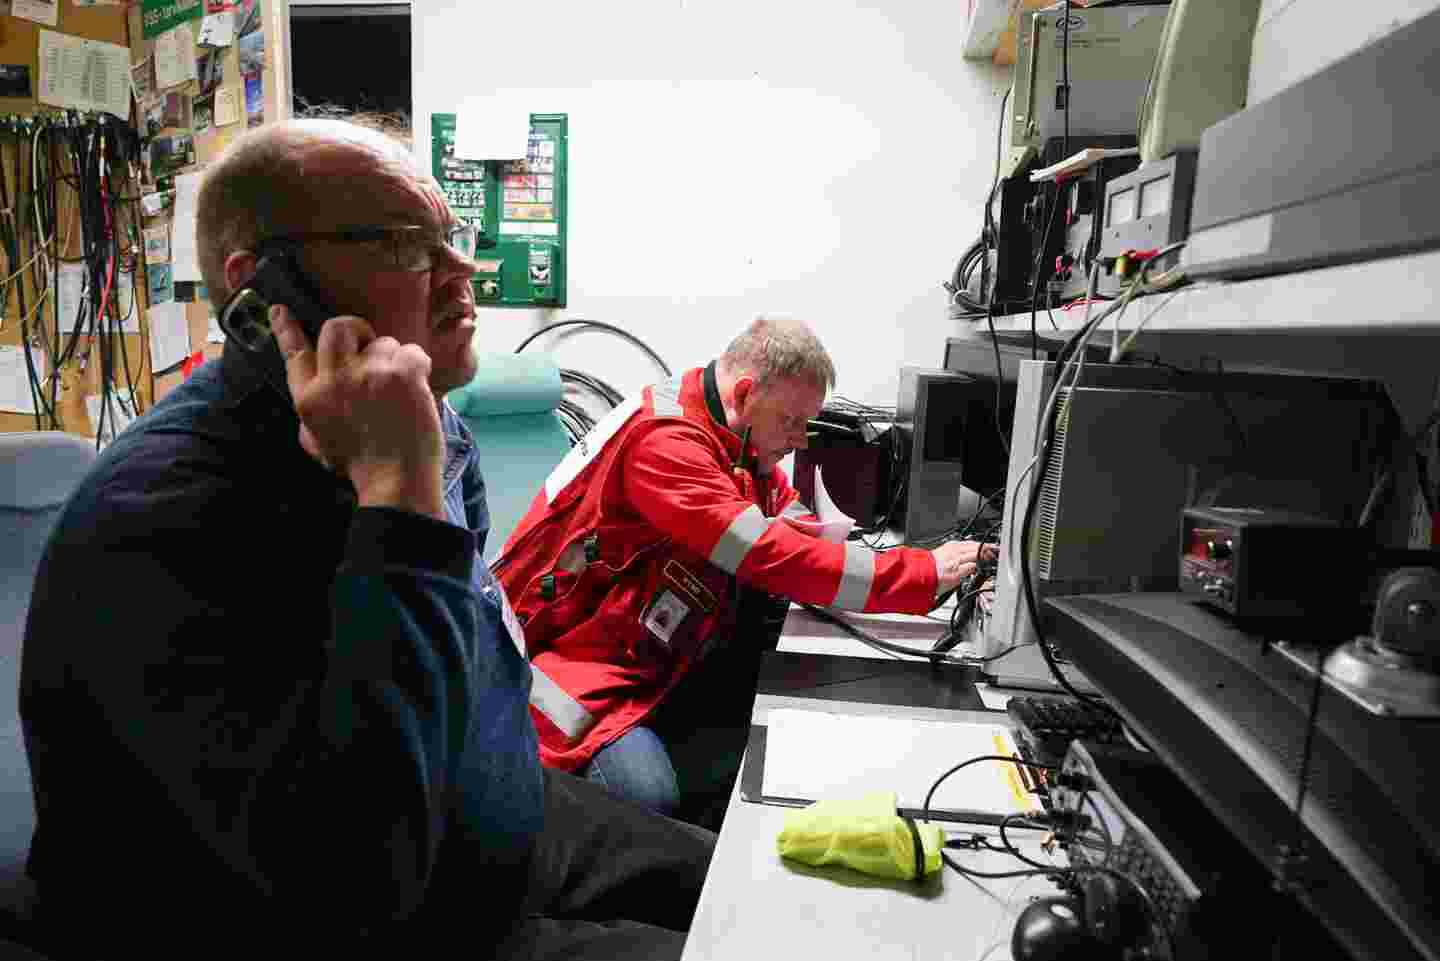 Frivilliga från Röda Korset och Frivilliga räddningstjänsten i ett tekniskt rum bland apparater. En av de frivilliga talar i telefonen.